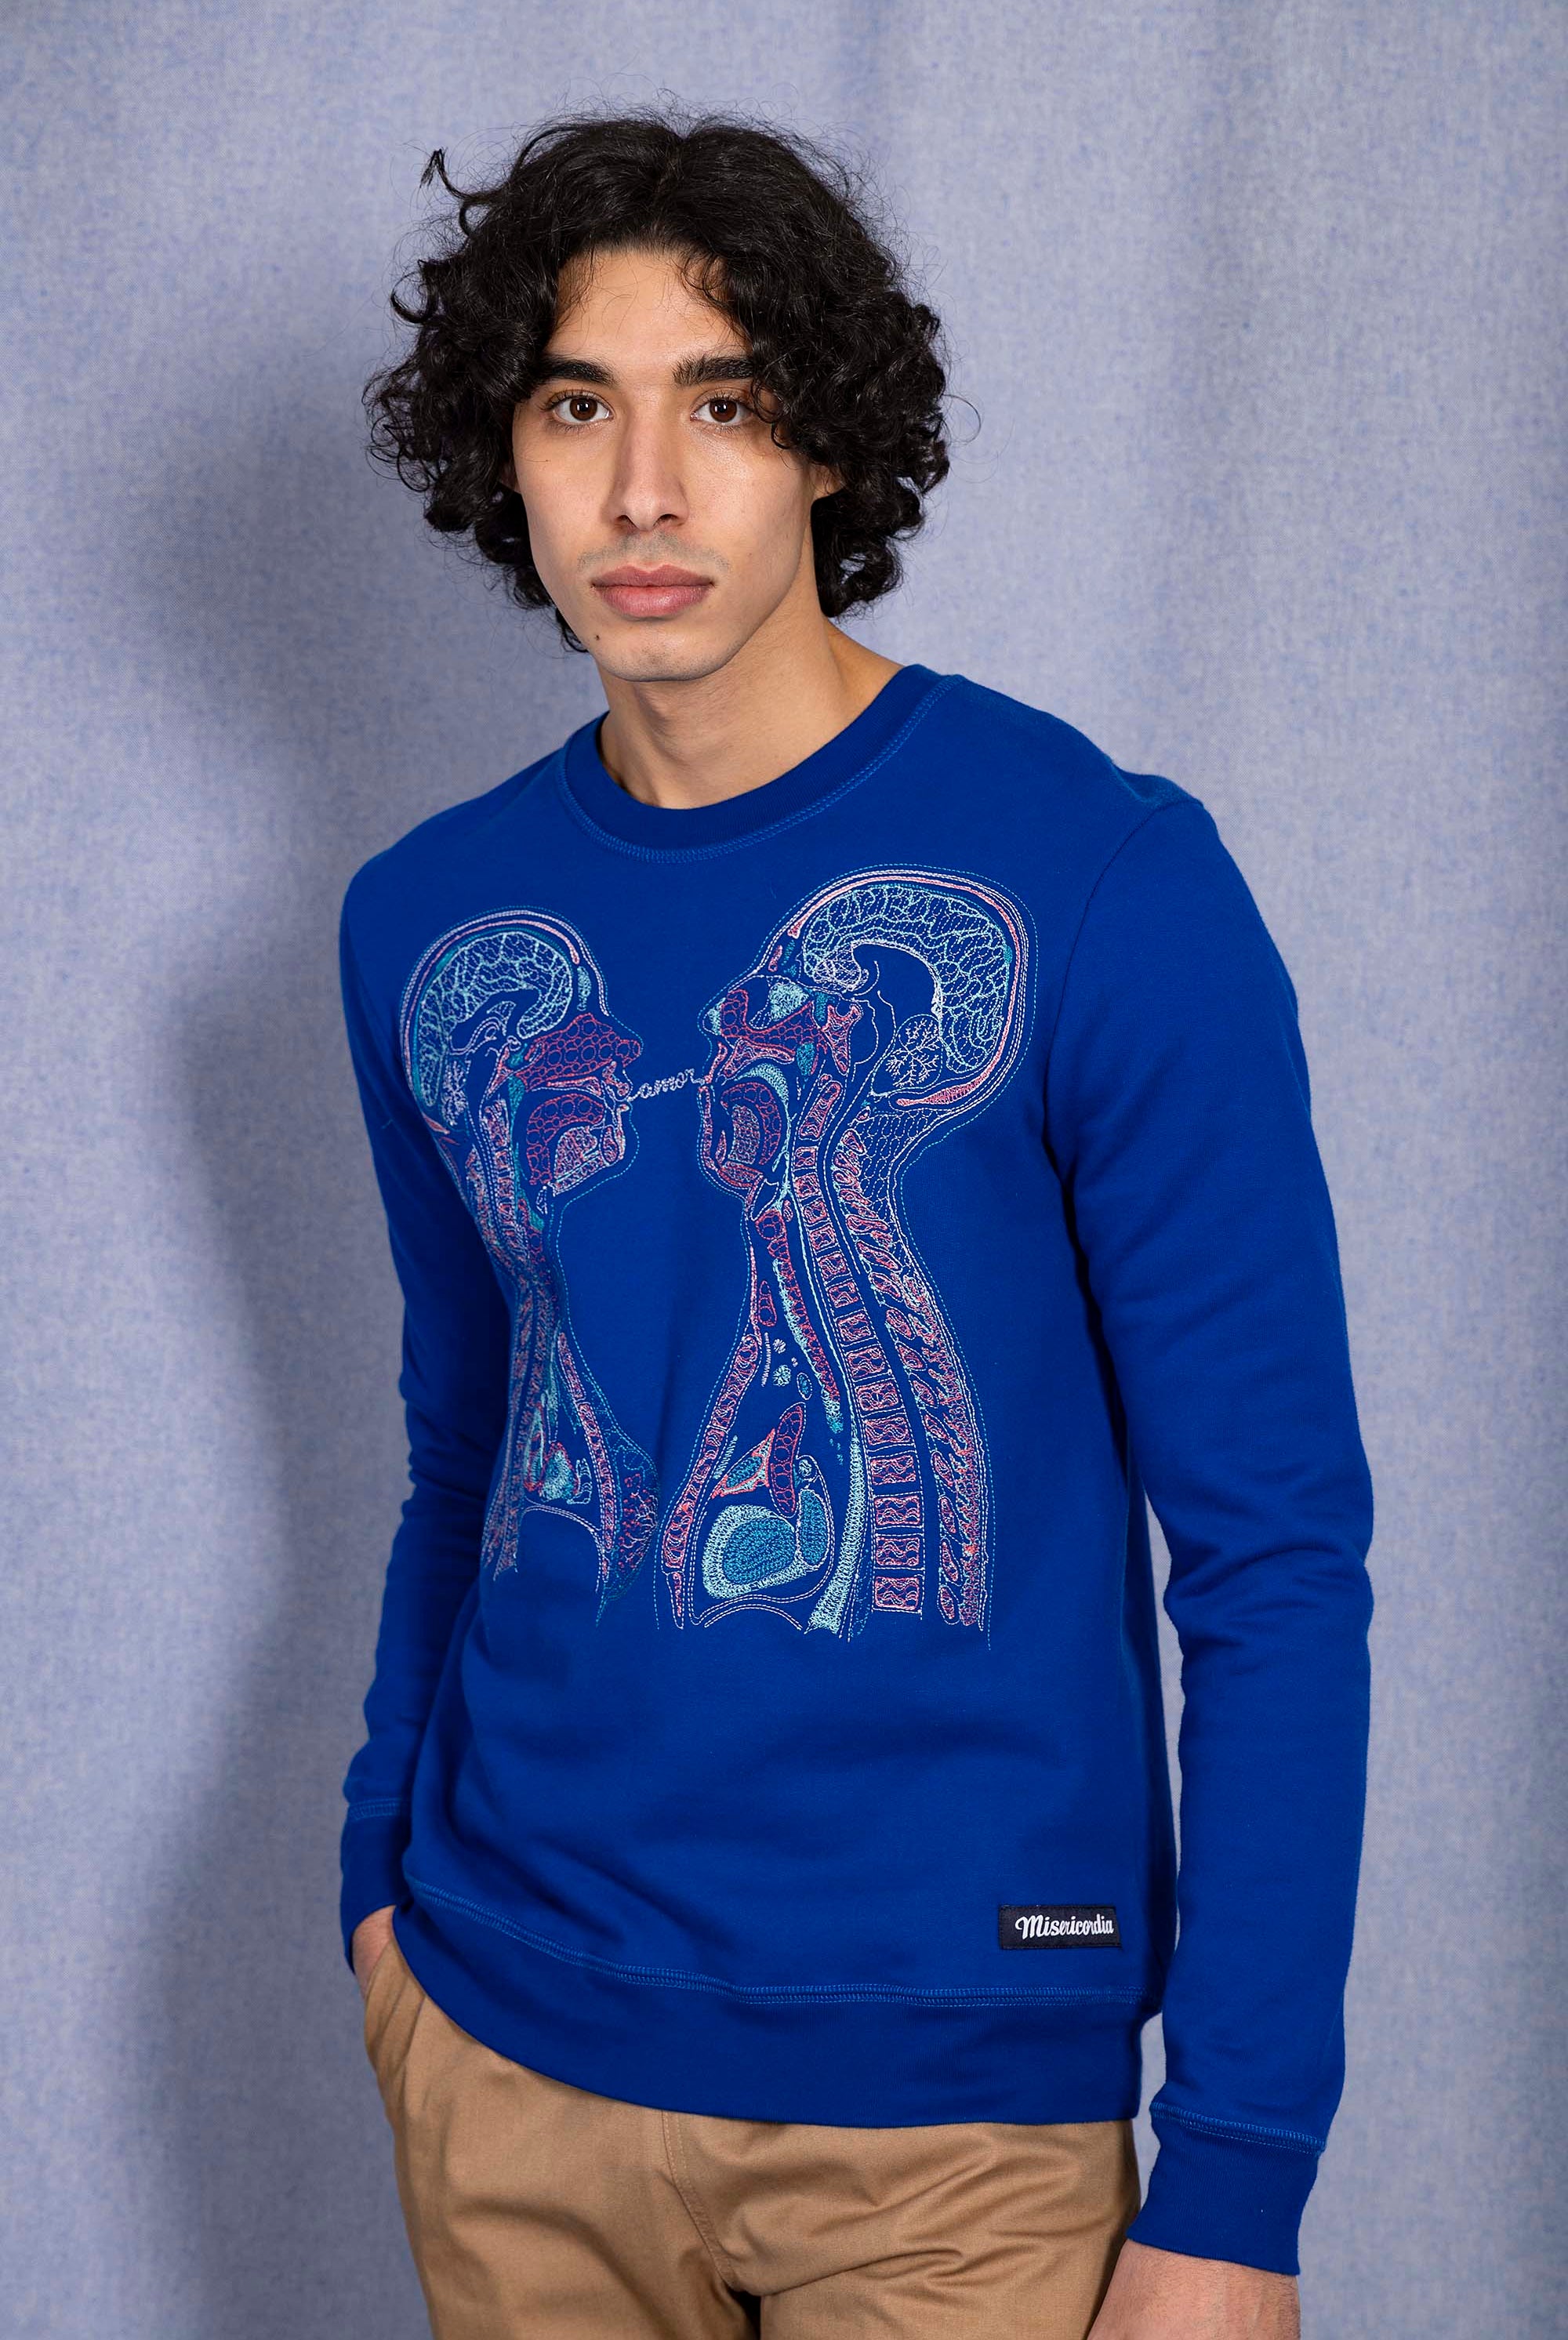 Sweatshirt Macarron Radiografia Bleu Saphir style skateur avec capuche ou plus élégant avec un col rond